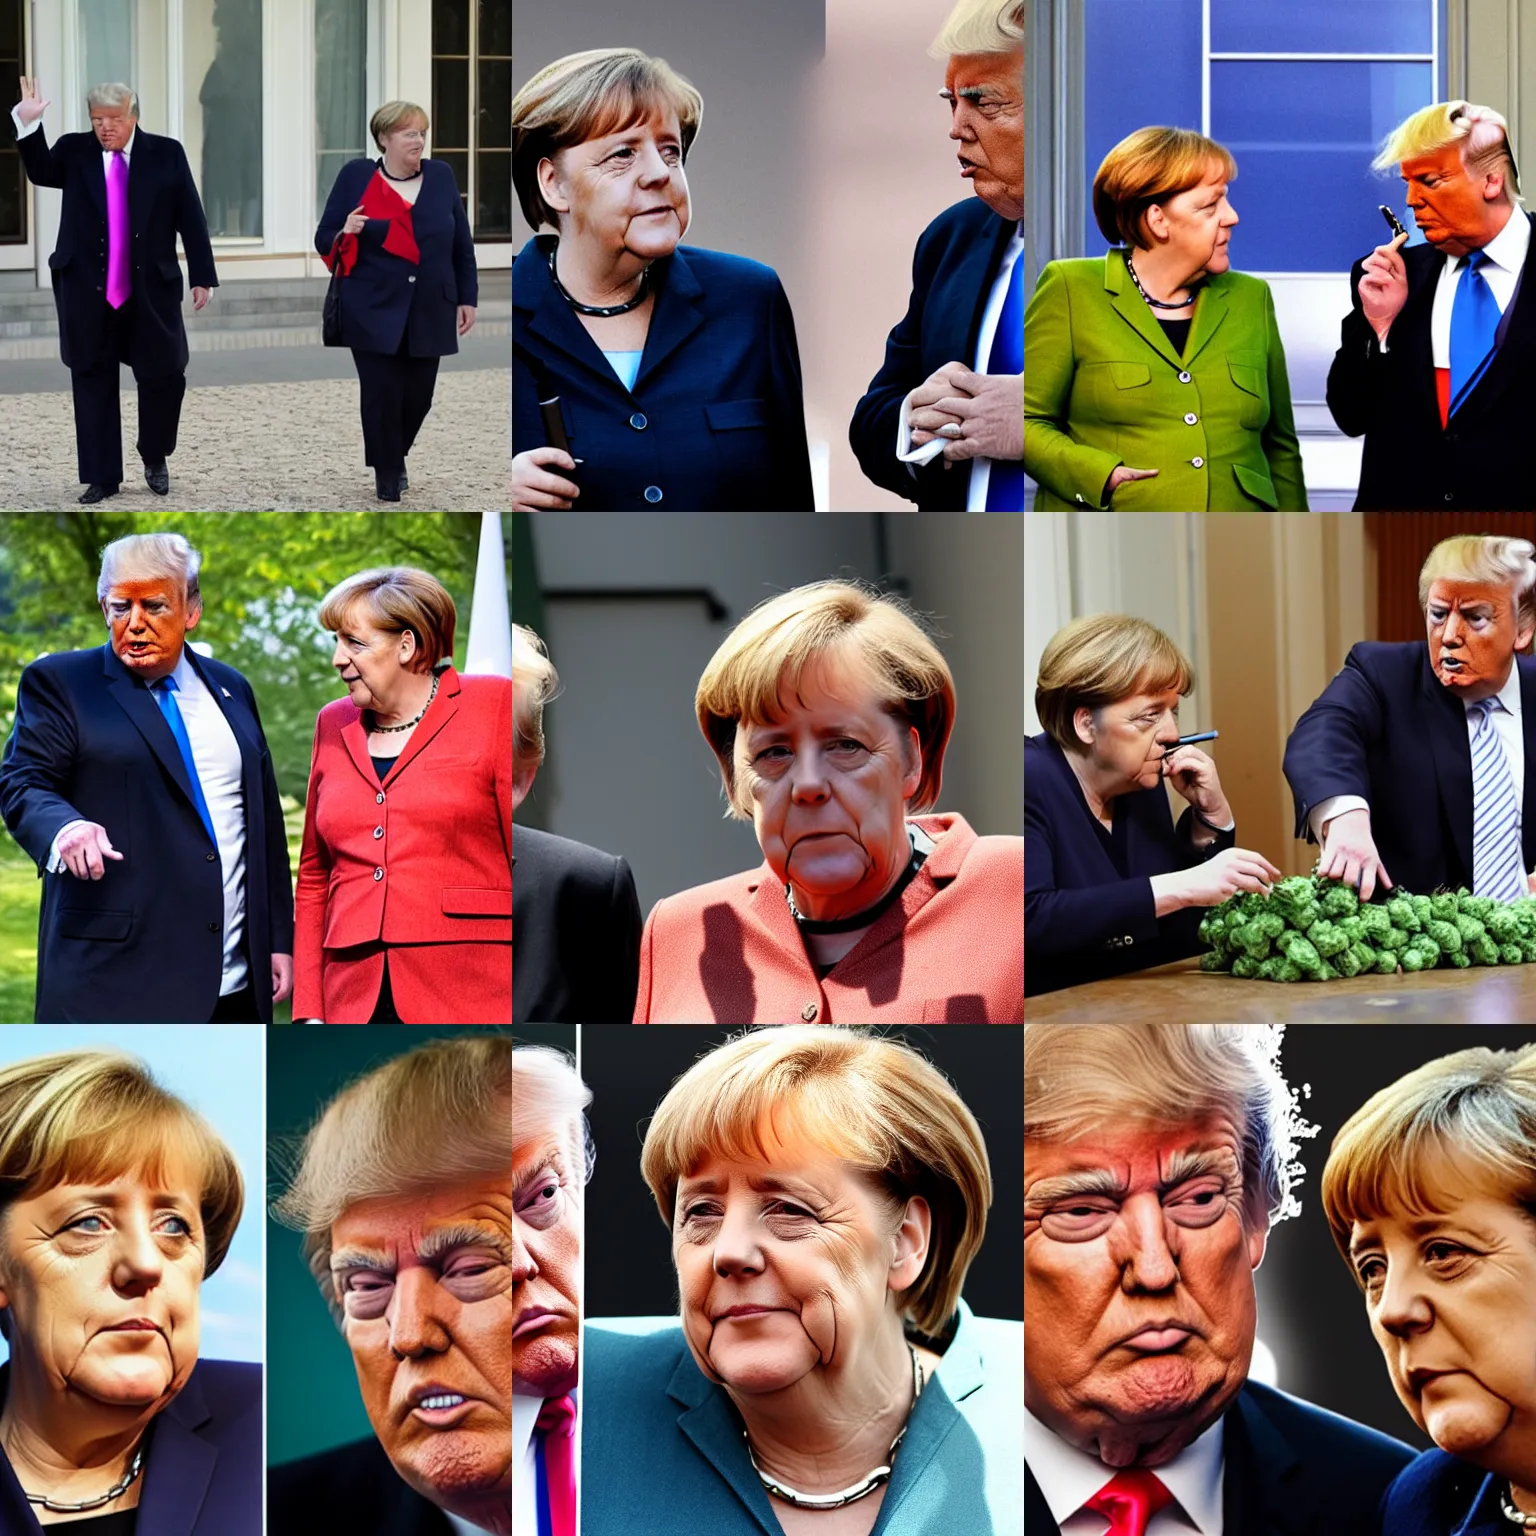 Prompt: Angela Merkel and Trump smoking weed together